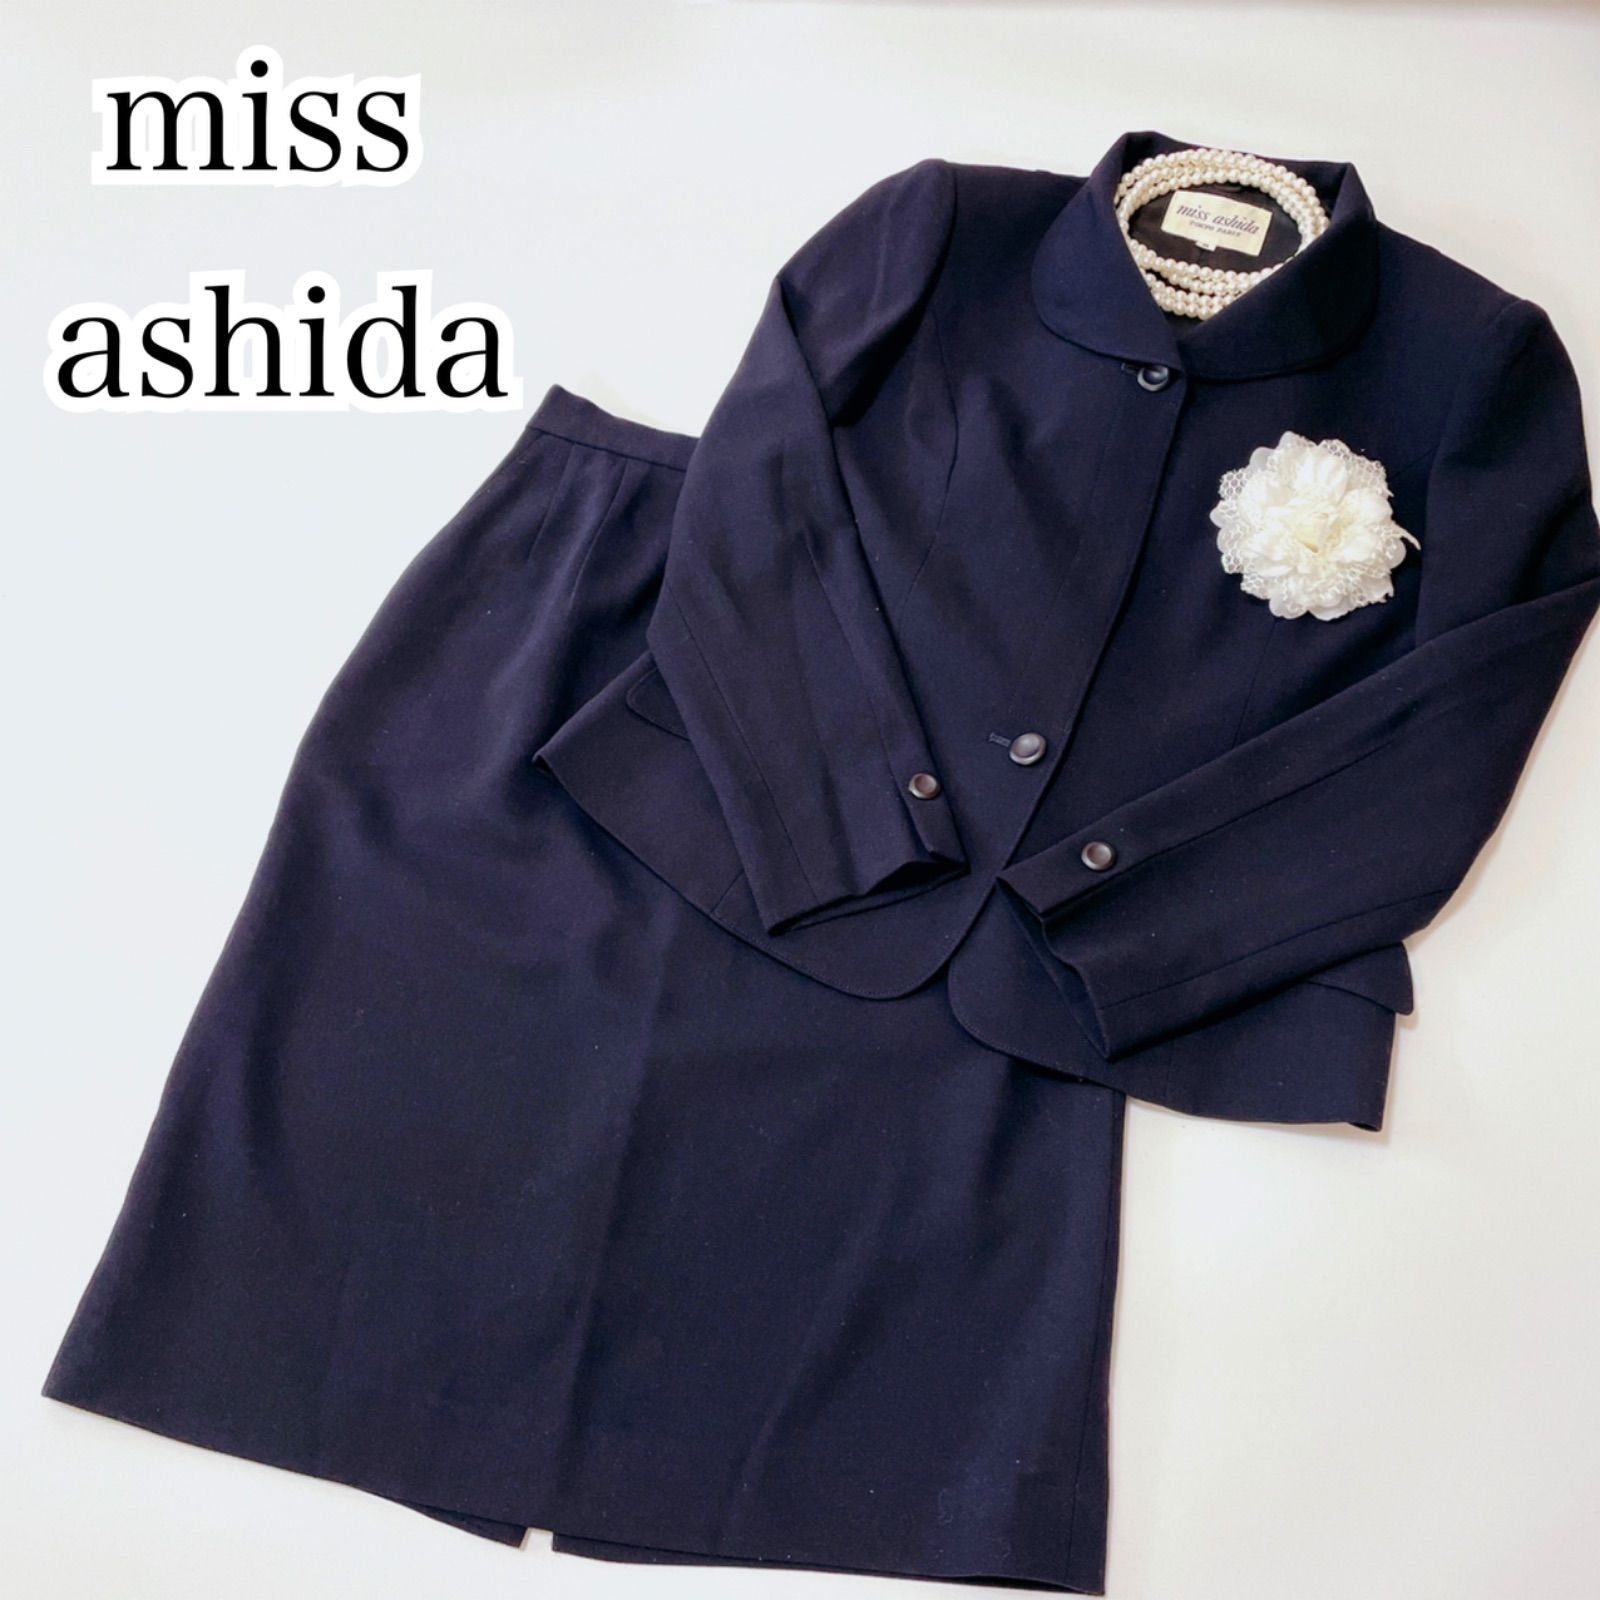 新品 ミスアシダ miss ashida ツイード スーツ 入学式 謝恩会など